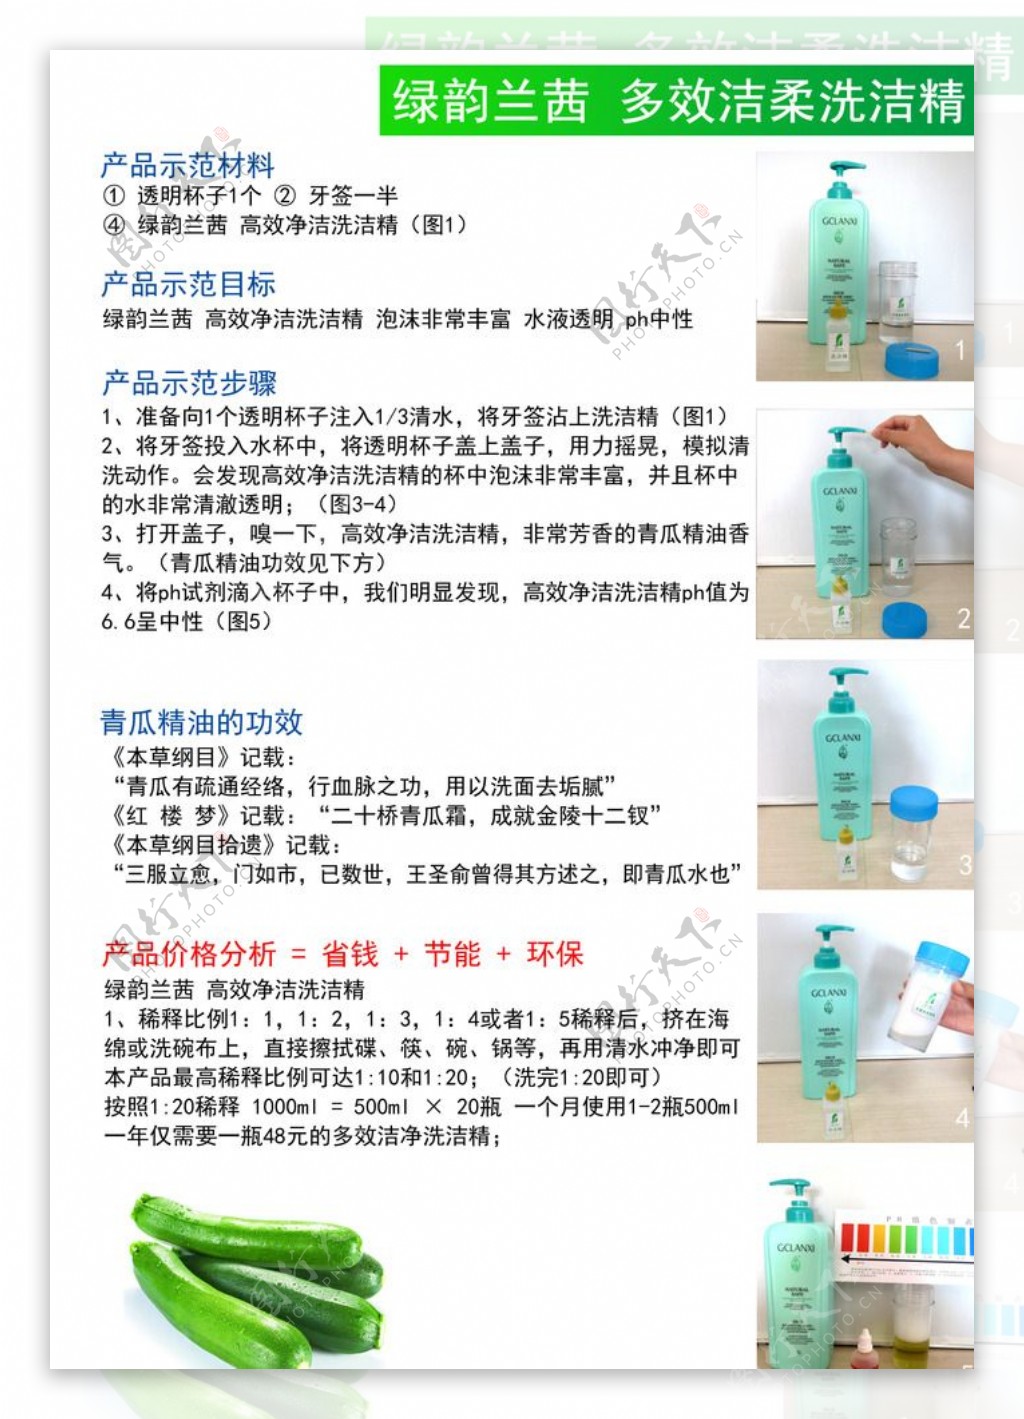 绿之韵洗涤剂实验过程图片